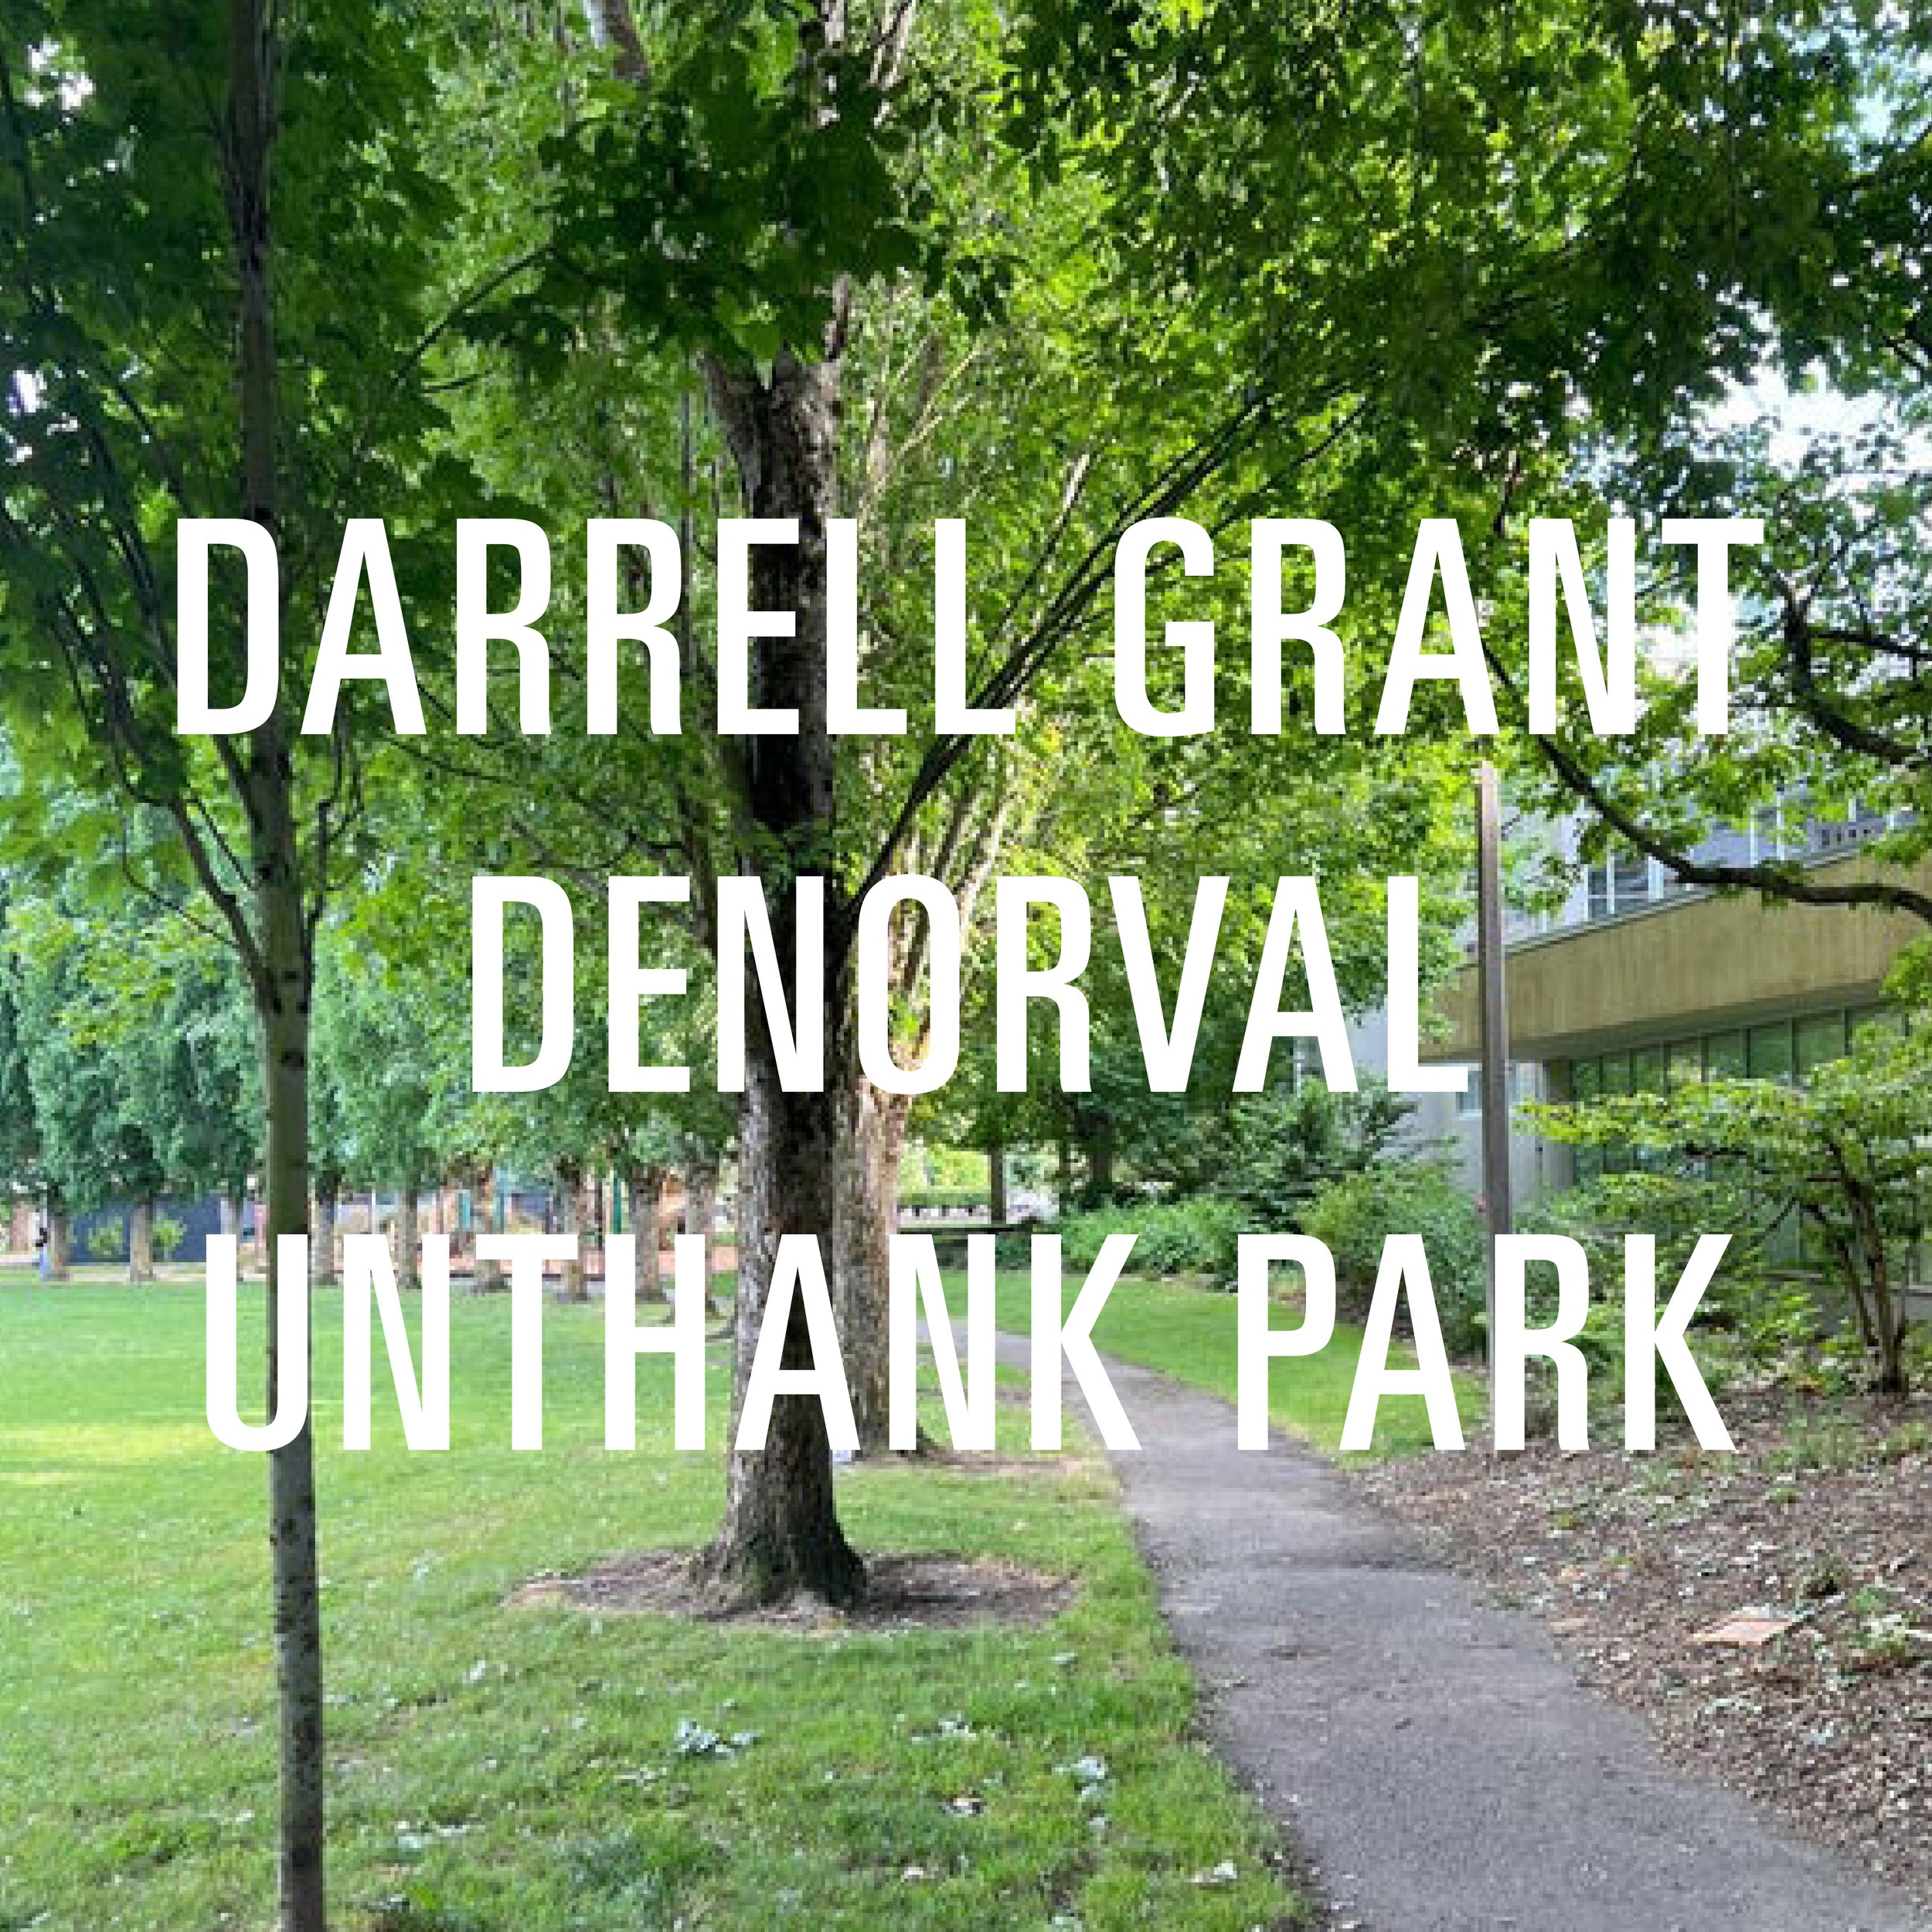 Darrell Grant Denorval Unthank Park